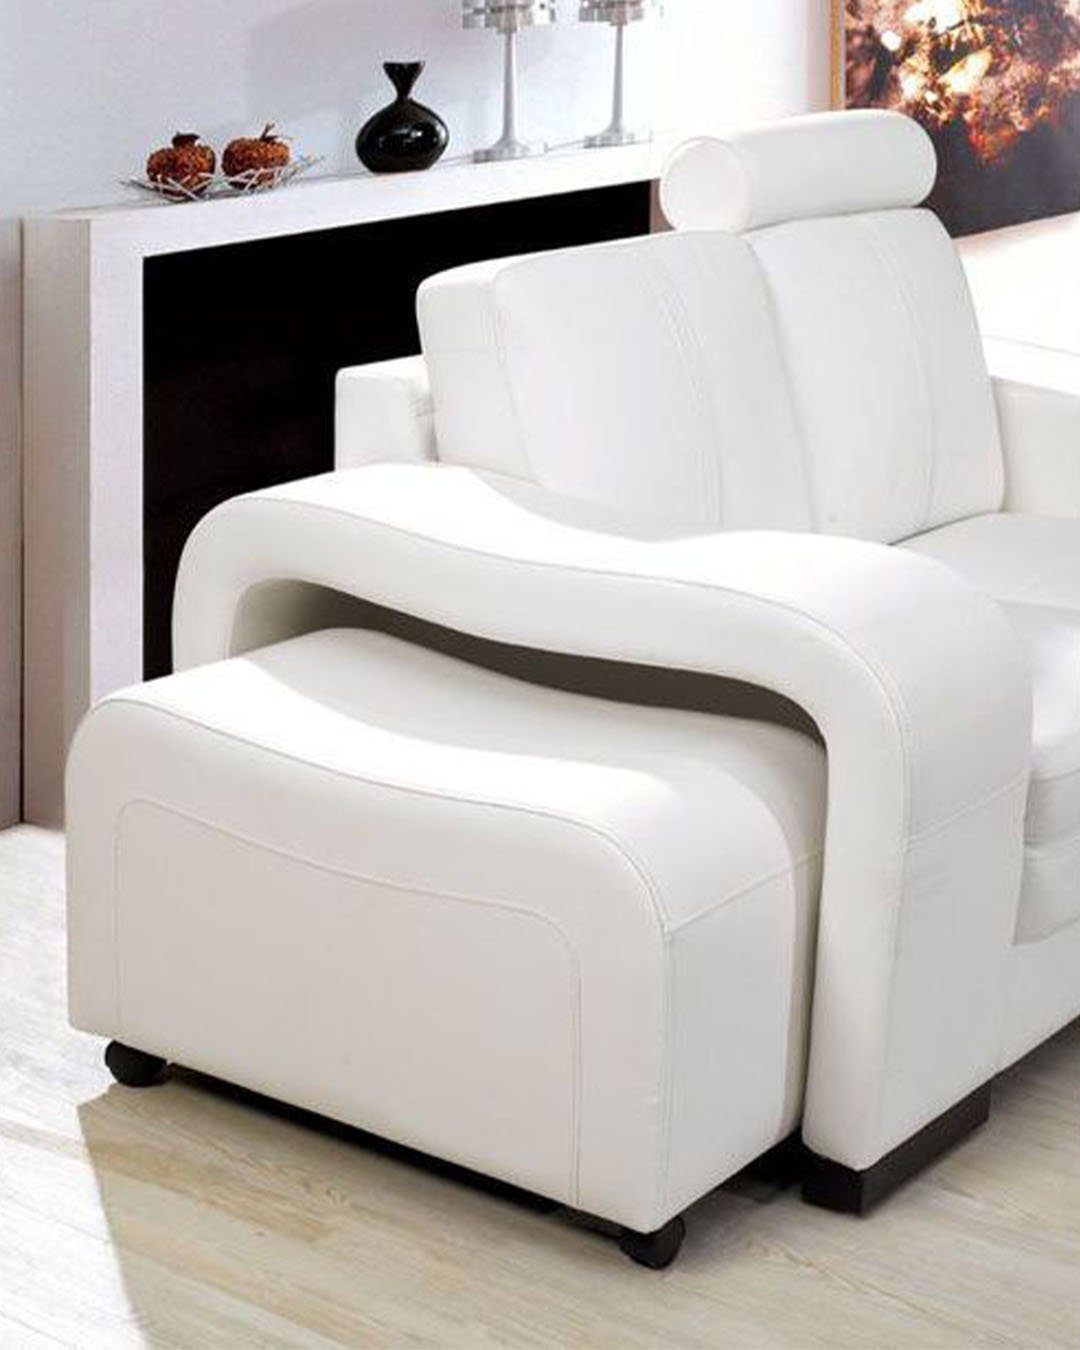 Europe Design Ledersofa JVmoebel Garnituren Made in Garnitur, Couch 3+2+1 Sofa Weiß Sitzer